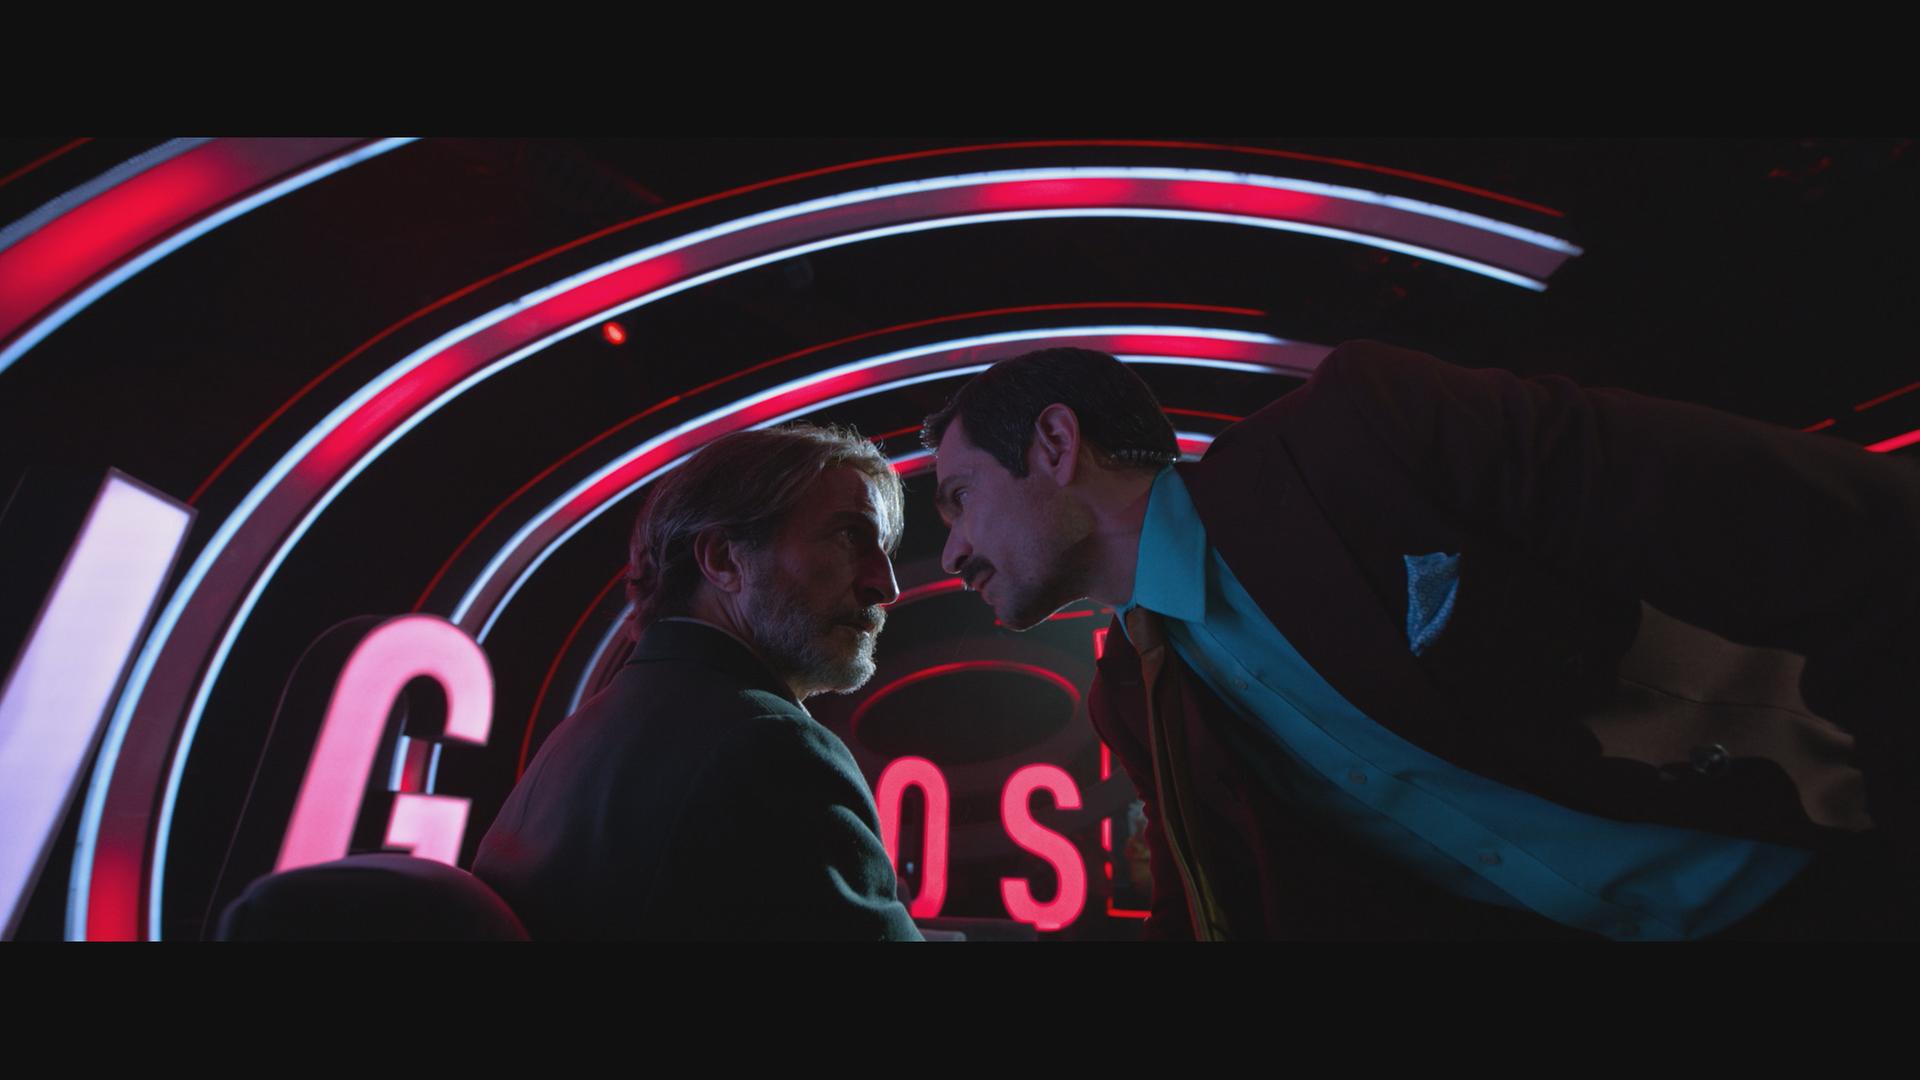 Ein Mann im Anzug schiebt sein Gesicht ganz nah an das Gesicht eines bärtigen Mannes. Im Hintegrund sind gebogene rote Leuchtstoffröhren zu sehen. 